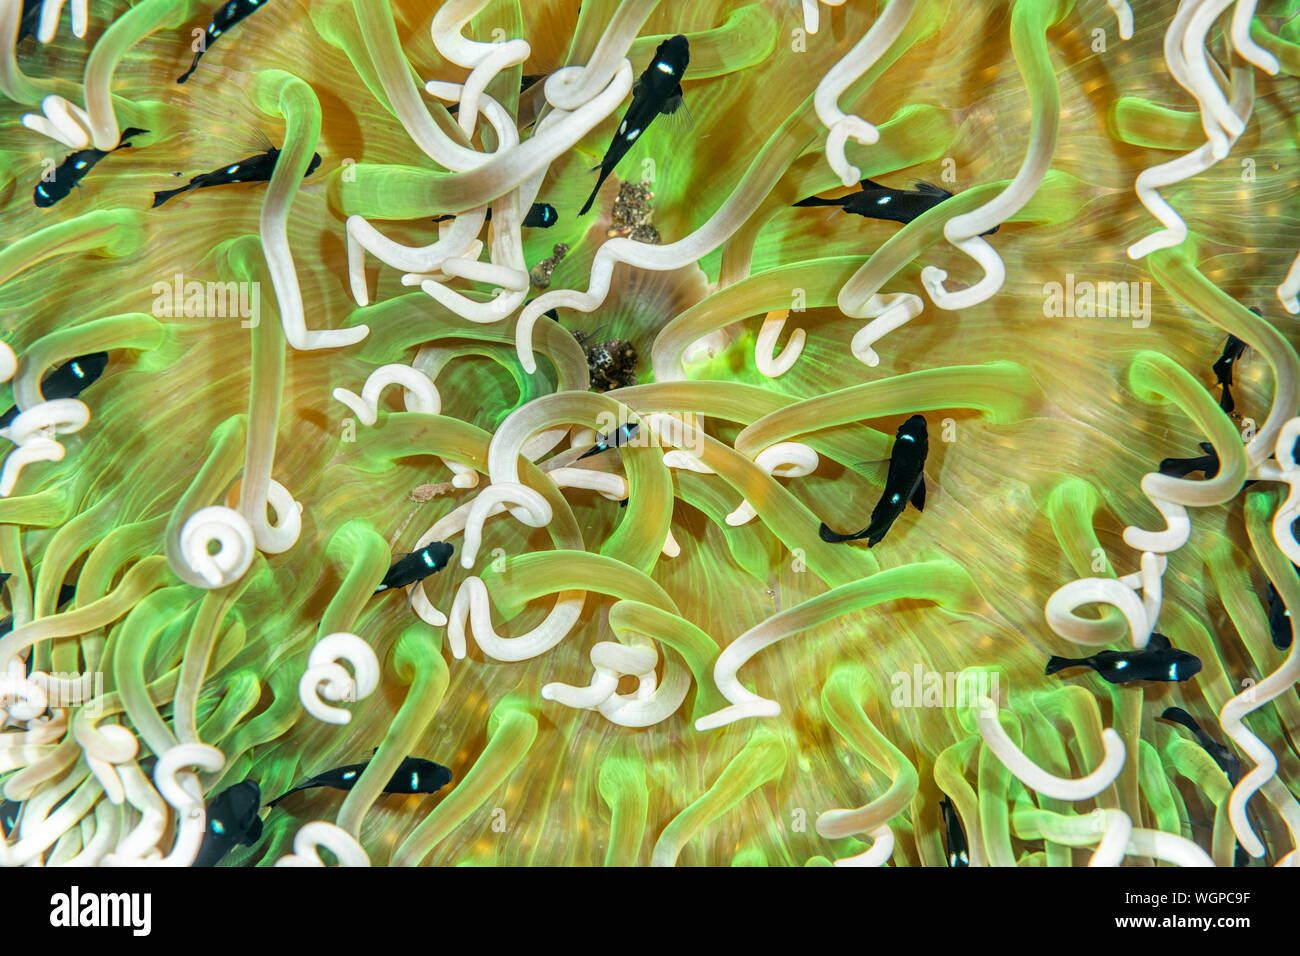 Les petits poissons nagent dans le domino tentacules d'une anémone de mer de protection. Banque D'Images